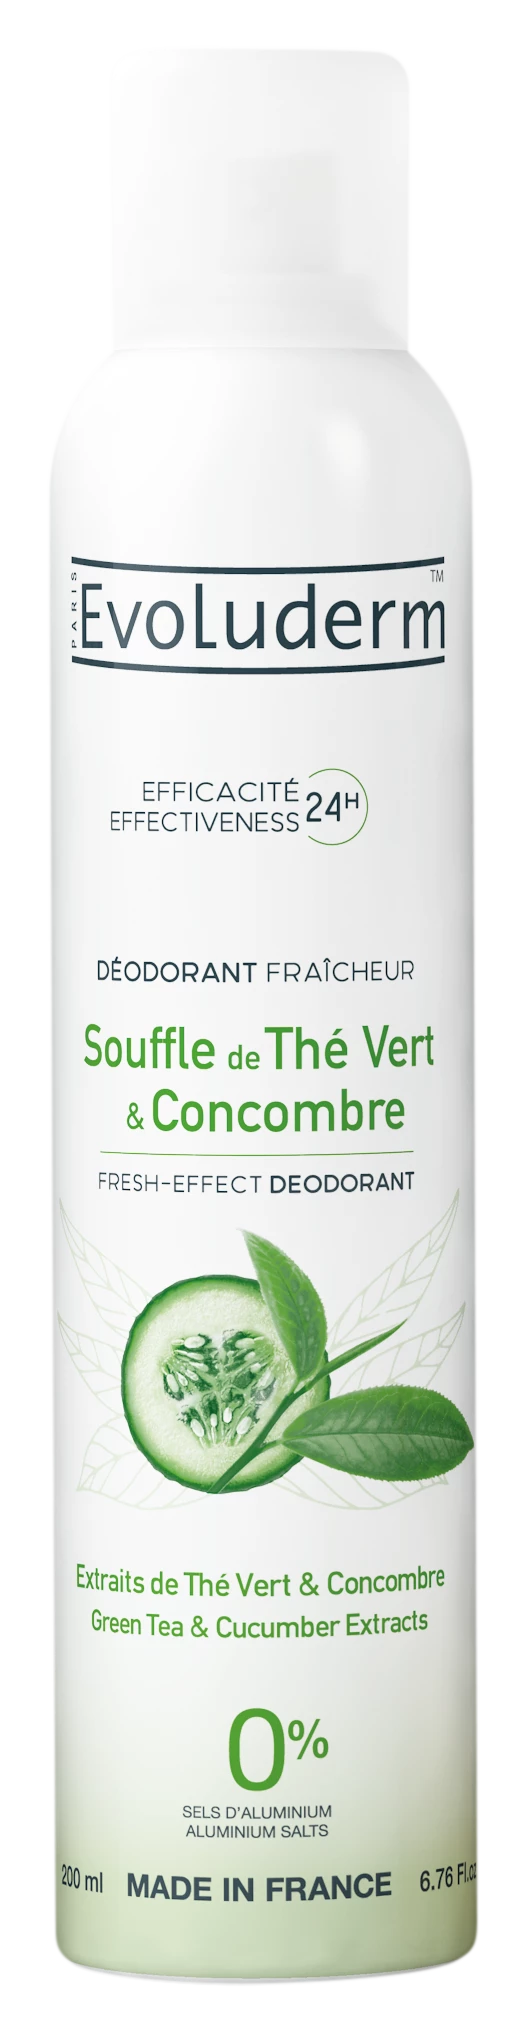 Groene Thee Soufflé en Komkommer Deodorant Groene Thee & Komkommer Extract, 200ml - EVOLUDERM